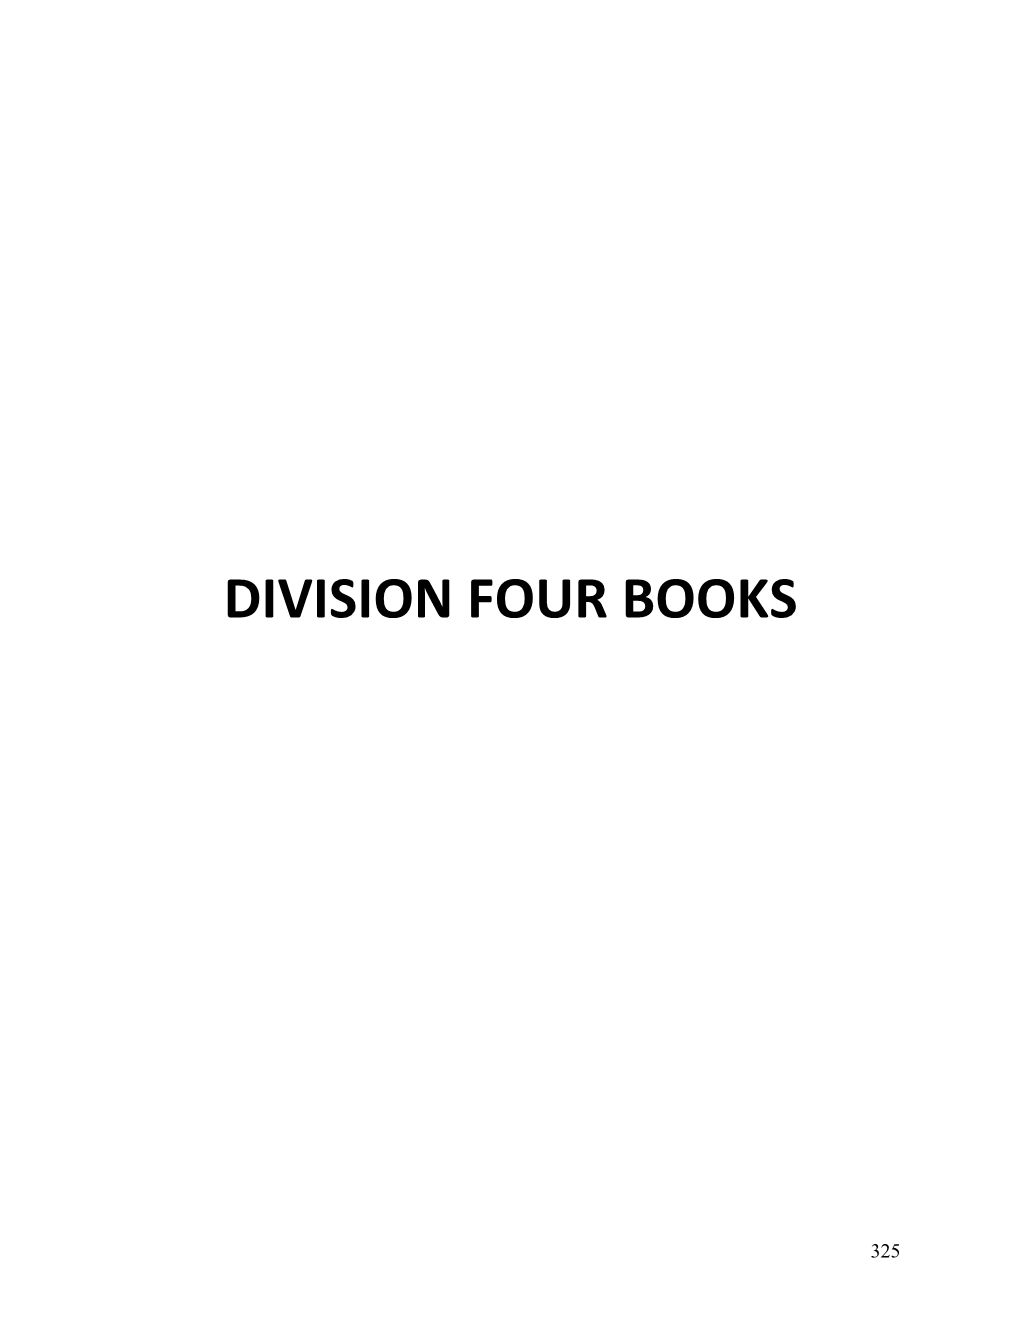 Division Four Books